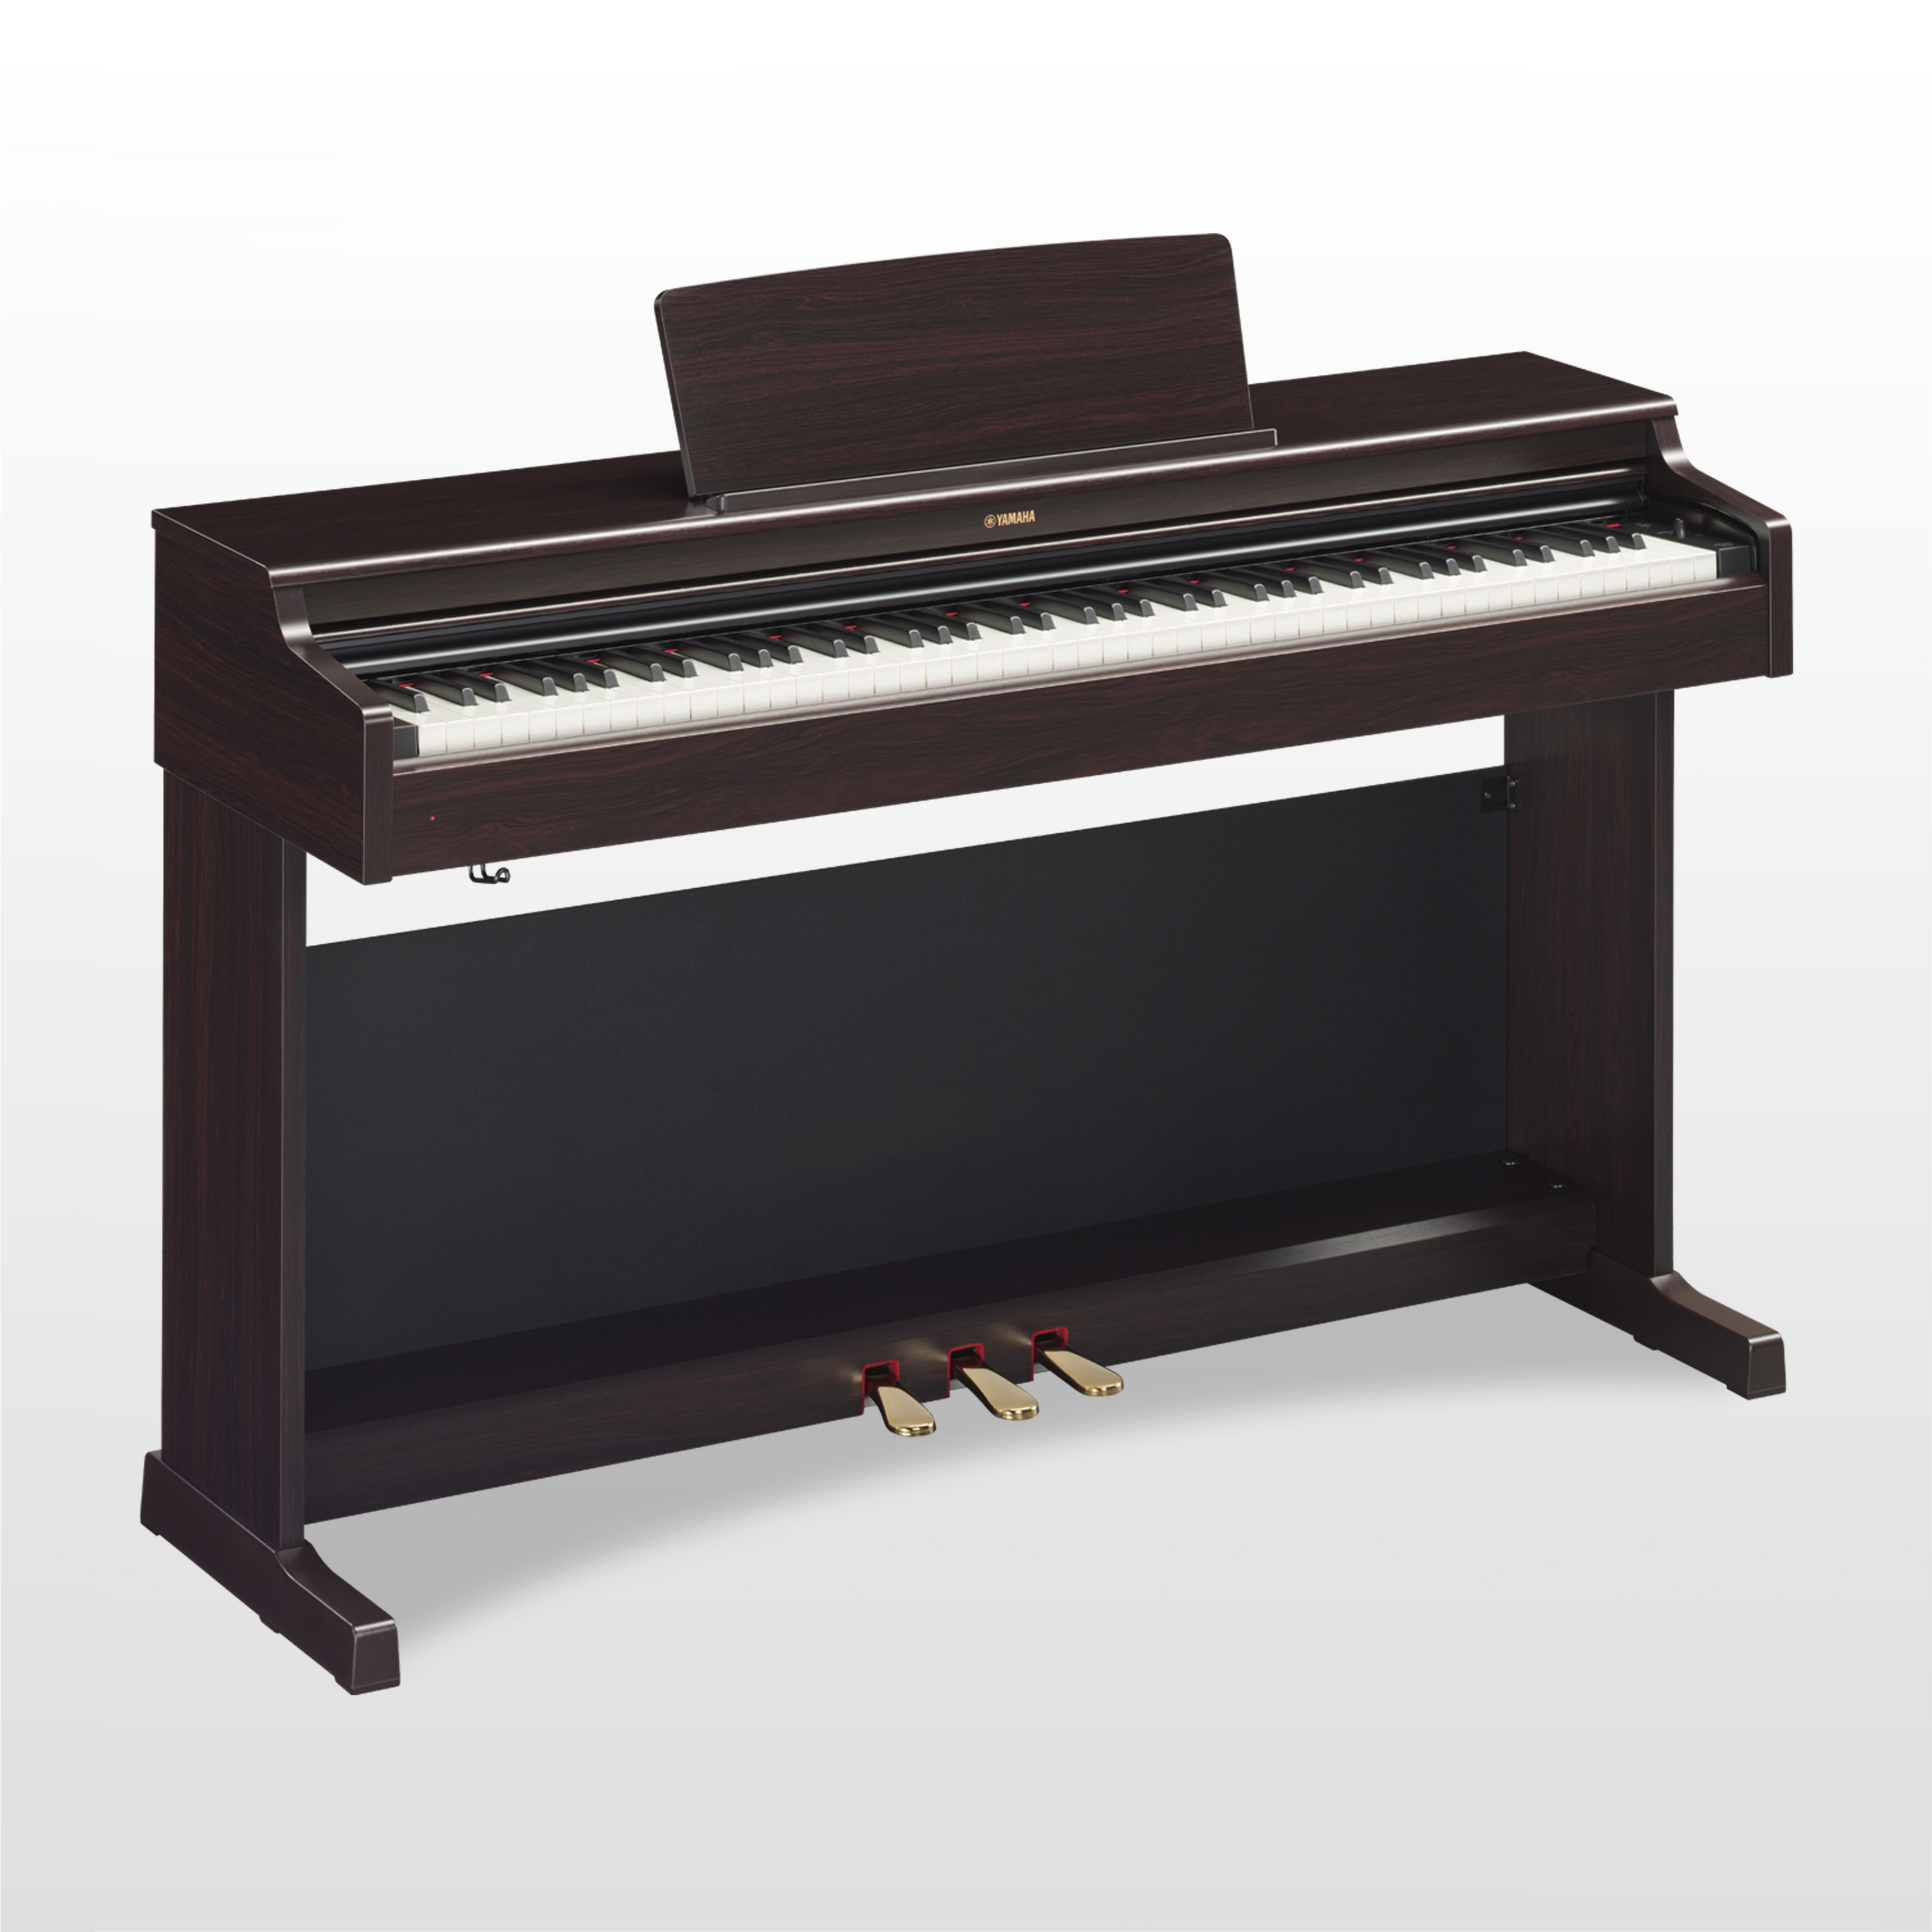 YDP-164 - Übersicht - ARIUS - Pianos - Musikinstrumente ...